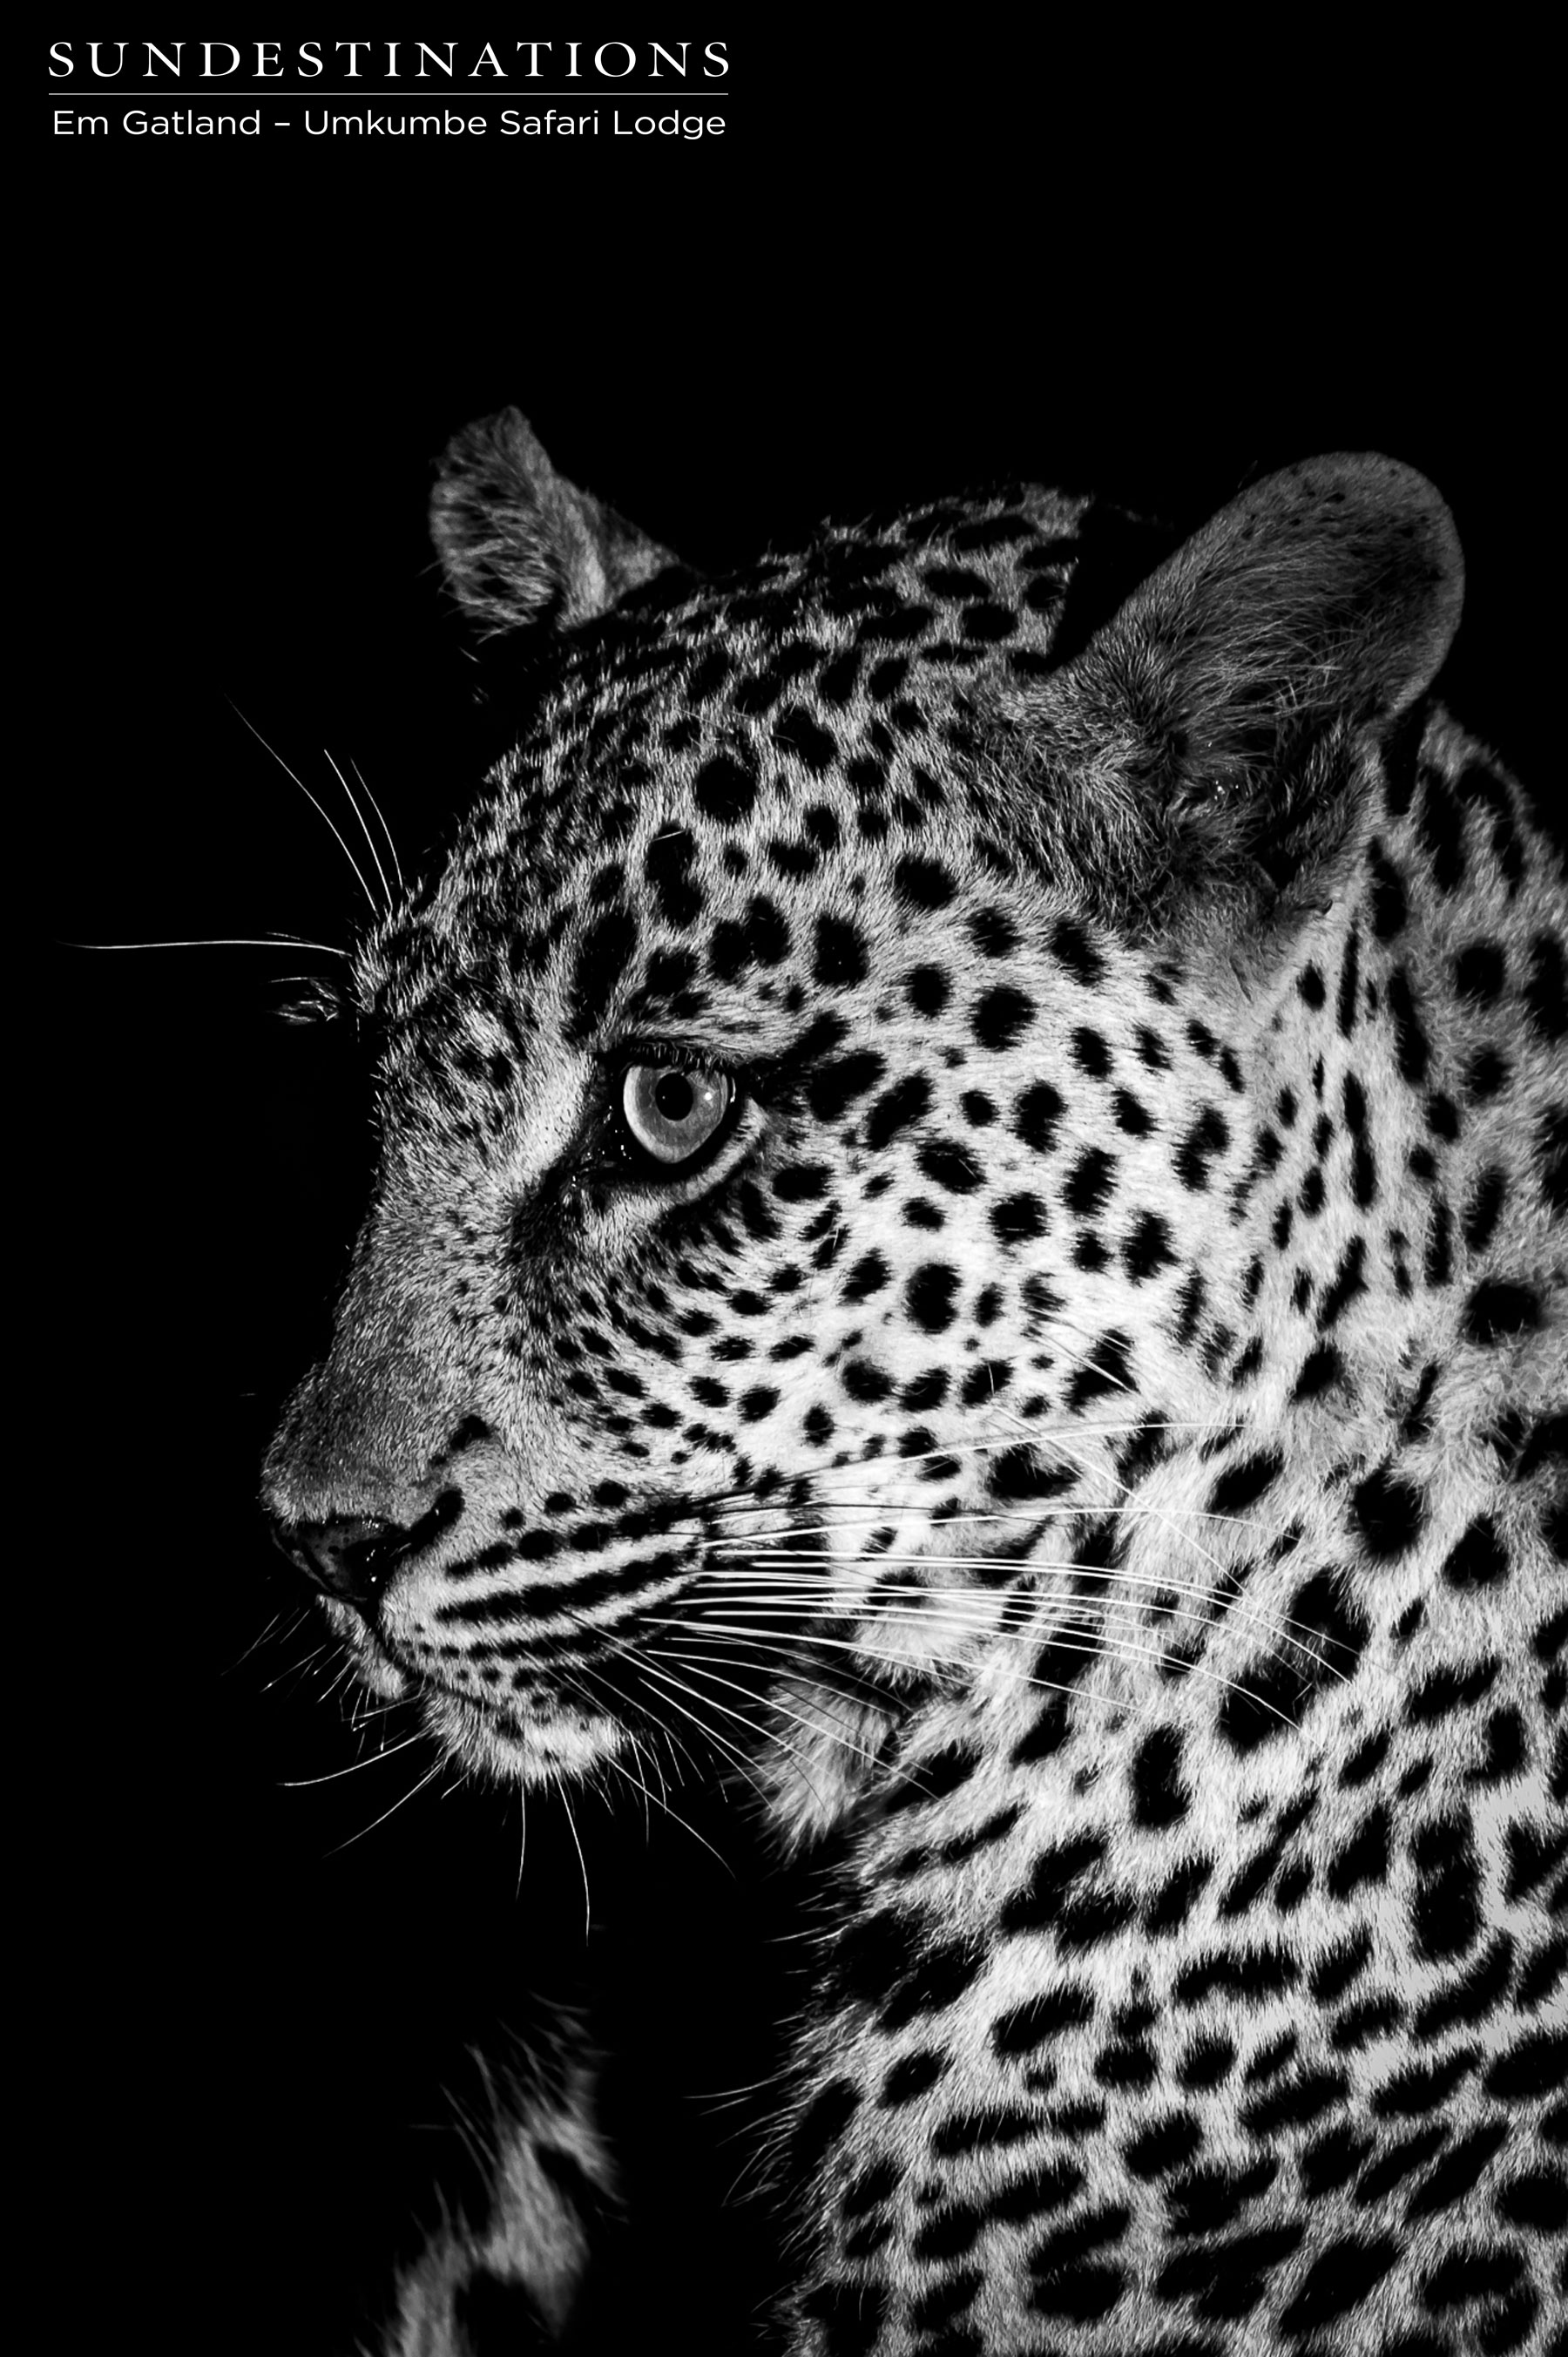 Tatowa the Leopard